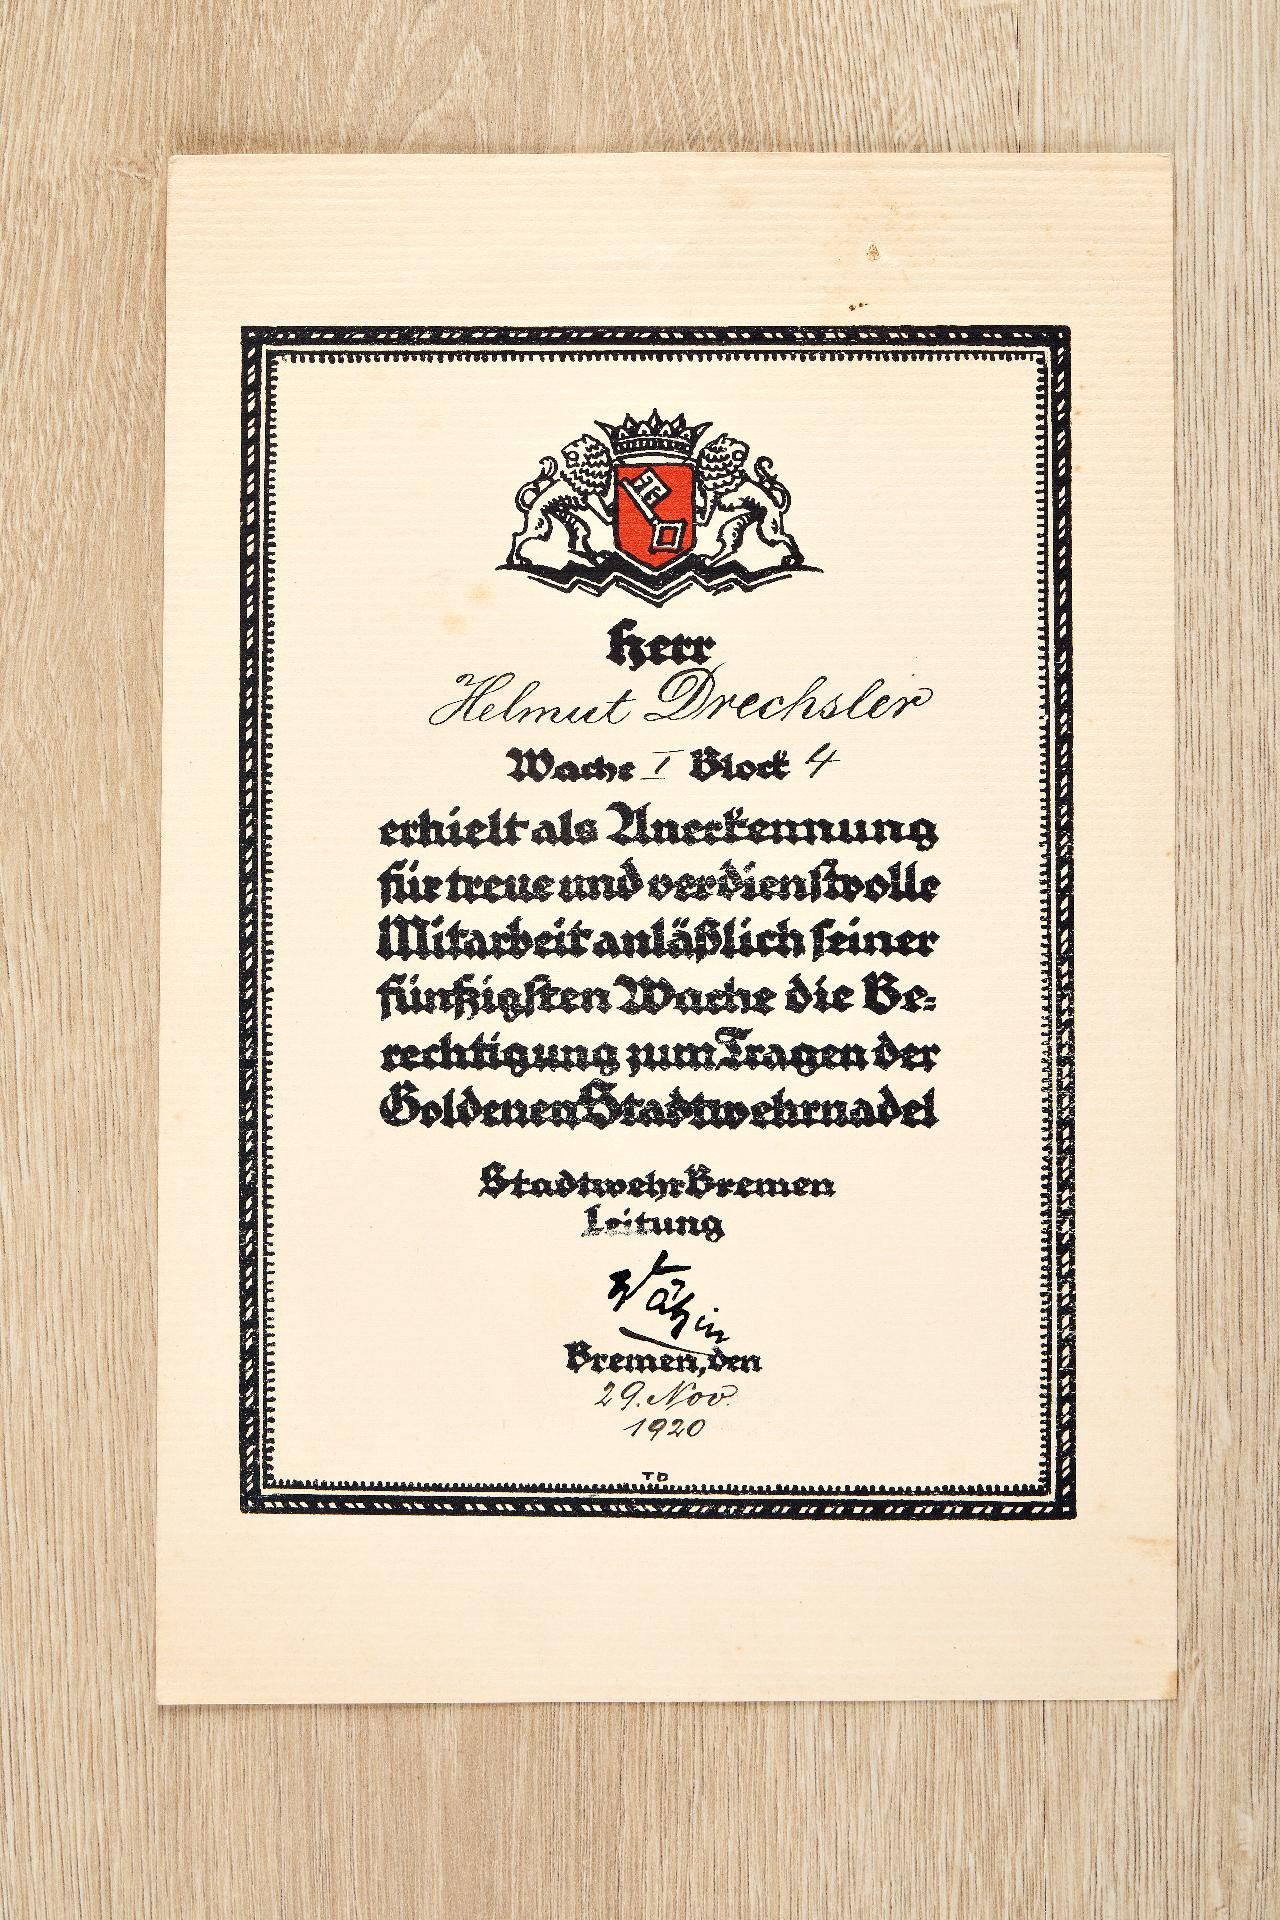 Kriegsmarine : Auszeichnungs- und Dokumentennachlass des Korvettenkapitäns Helmut Drechsler - Image 25 of 28